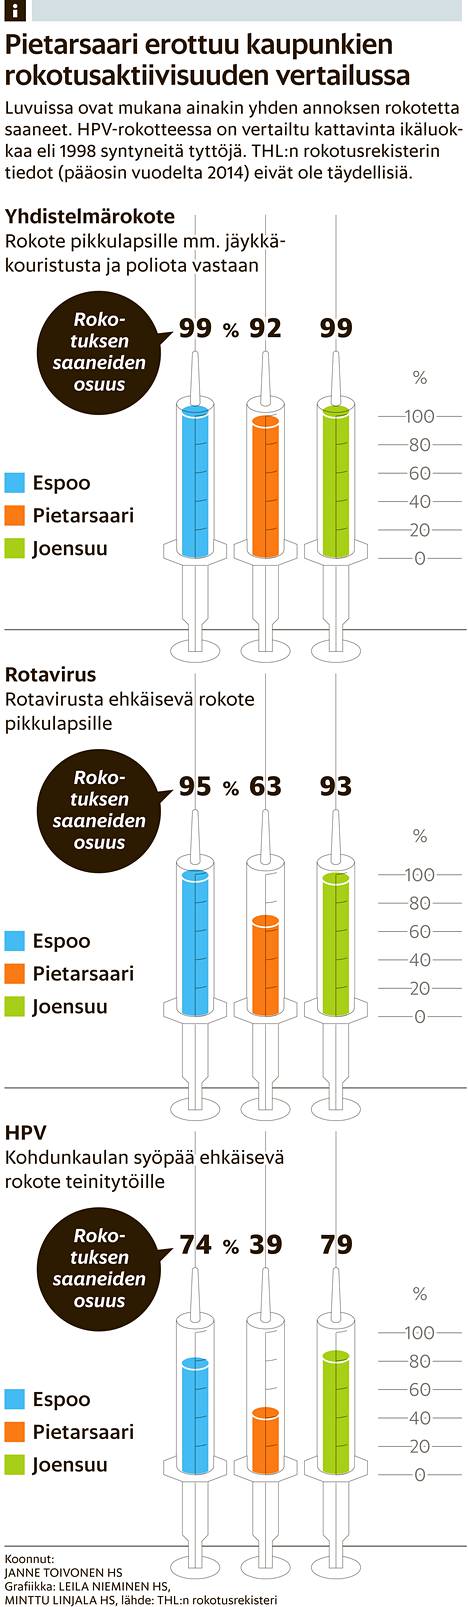 Pietarsaaressa kaksi viidestä ei ota Rota-rokotetta – Rokotevastaiset  seudut huolestuttavat viranomaisia - Kotimaa 